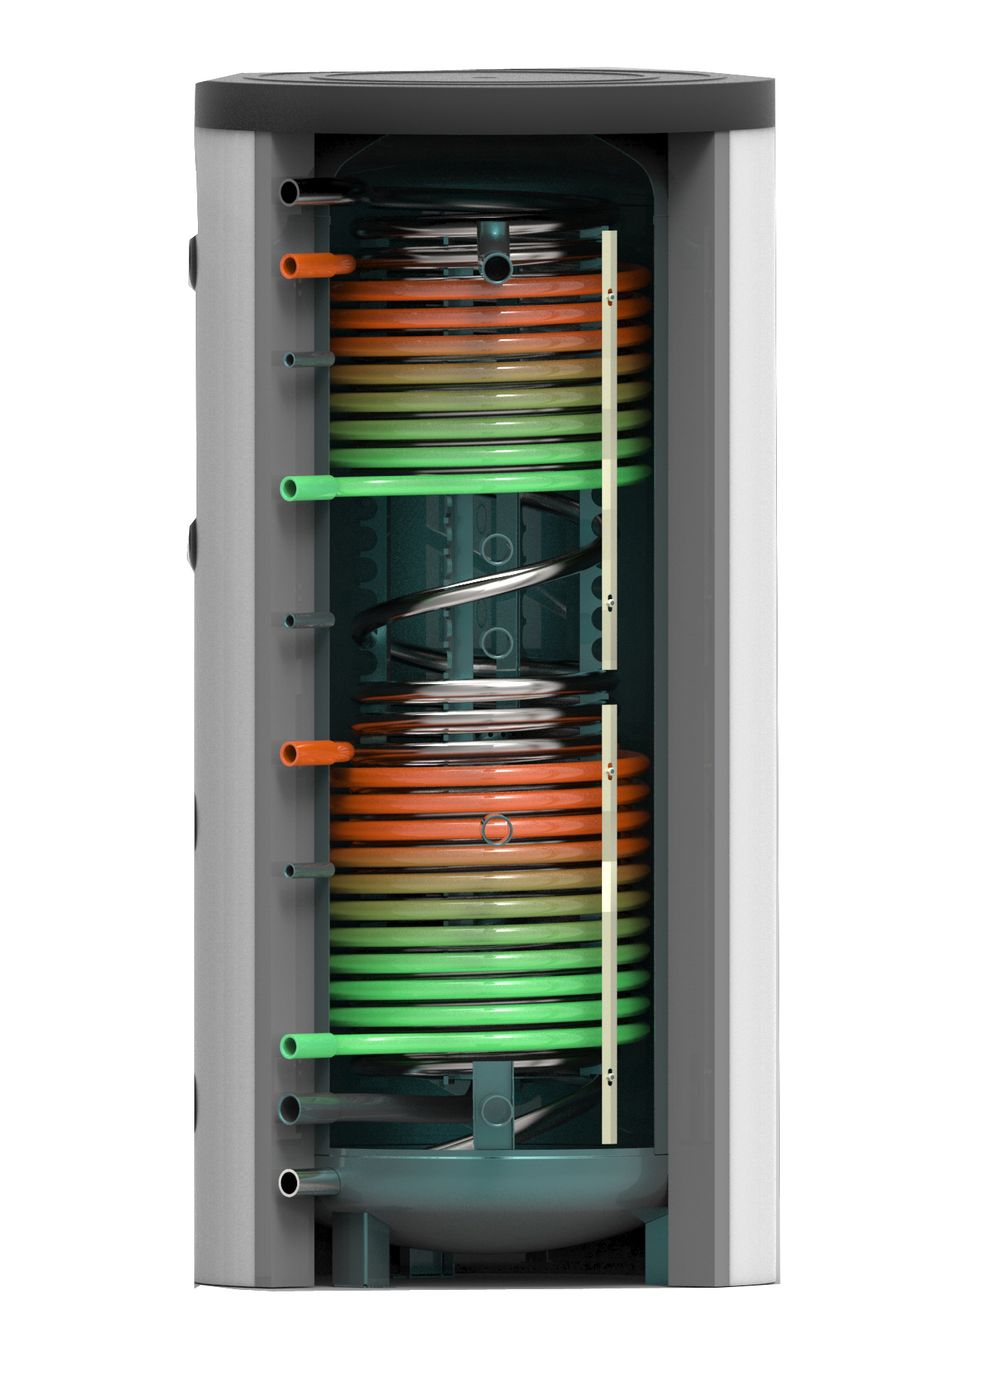 Vakuumröhrenkollektor - Brauchwasser & Heizung Paket 10,24m² CPC - 825 Liter Speicher (BWH-11.825)